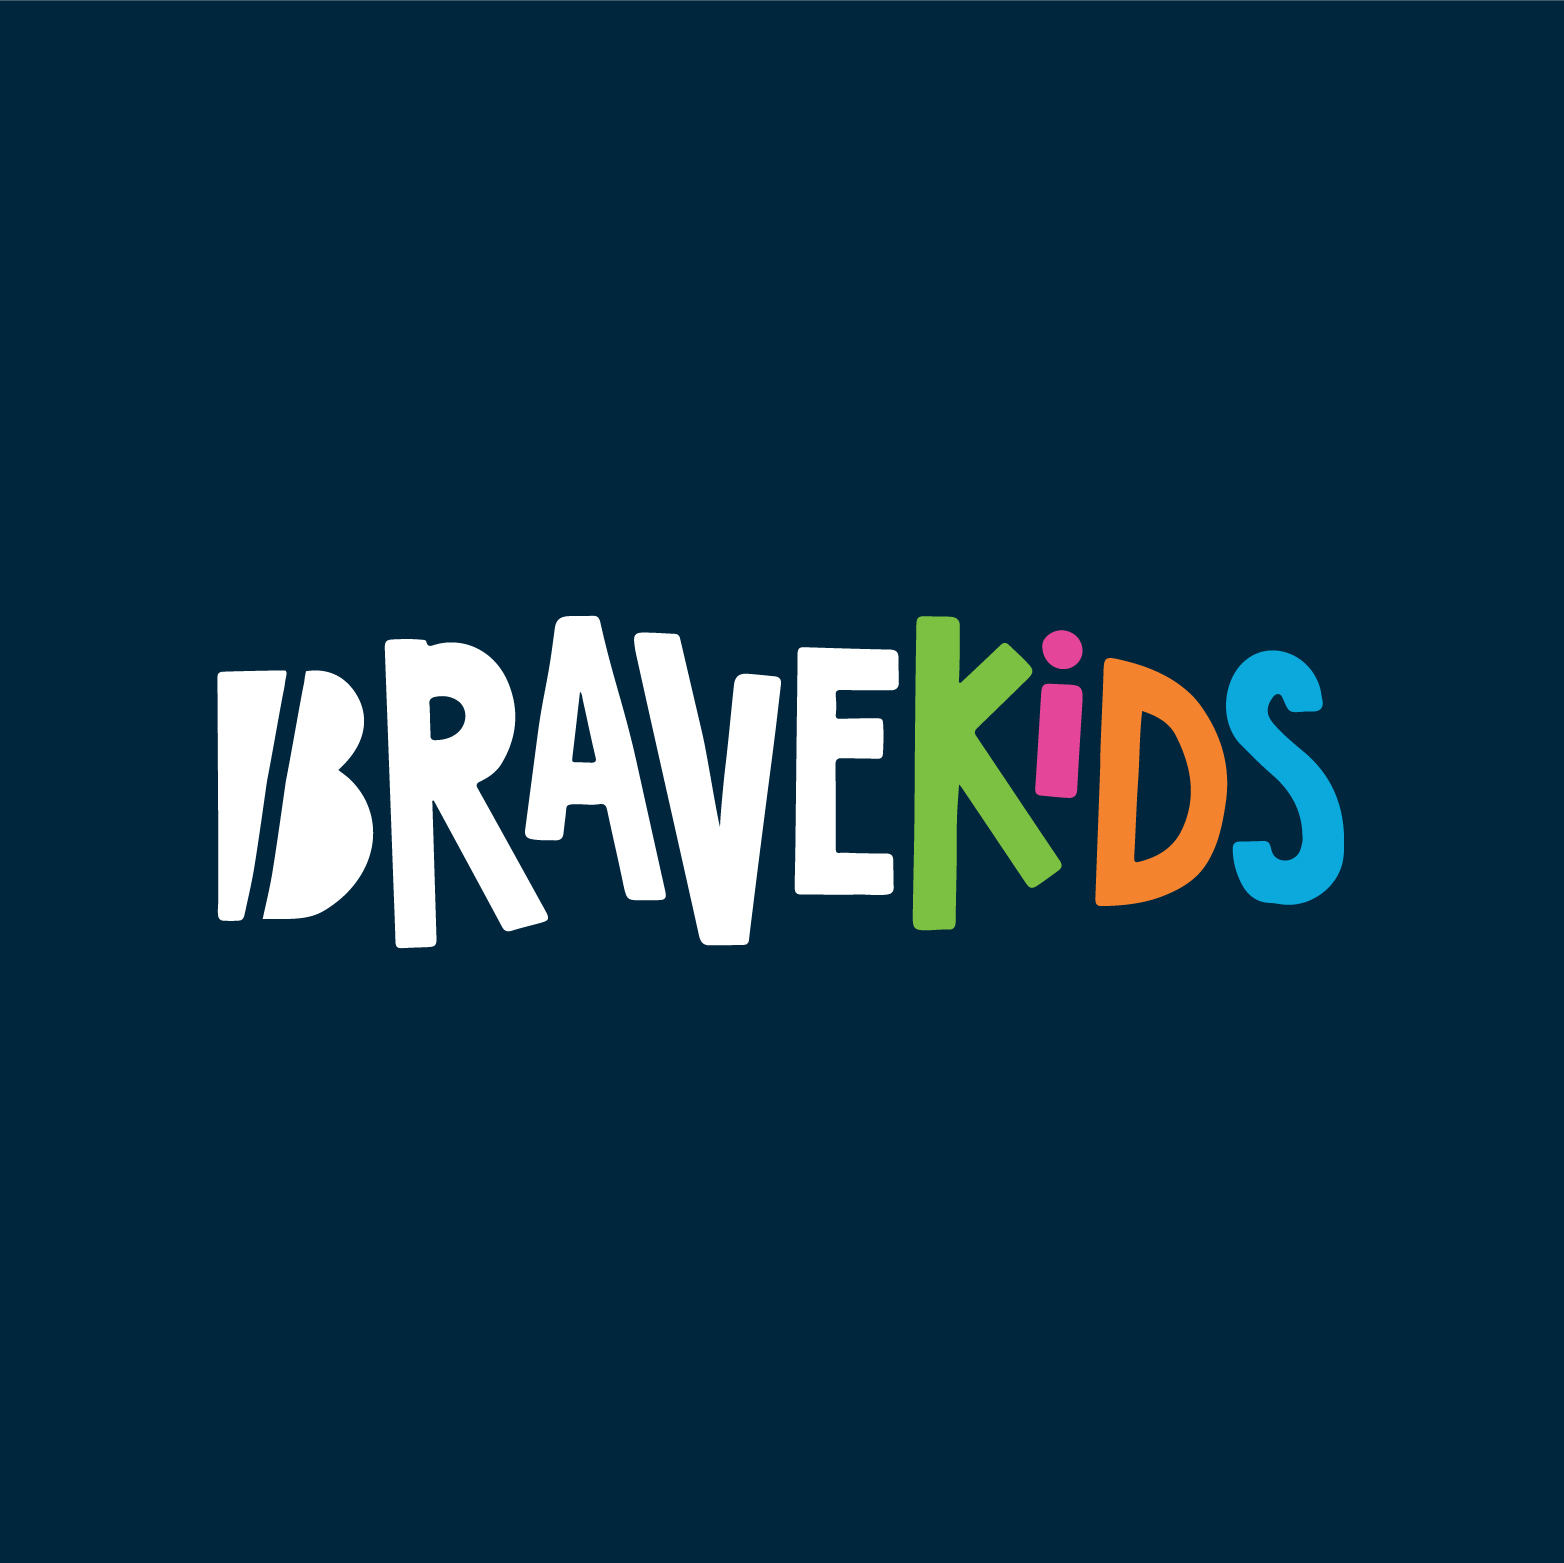 BRAVE Kids logo